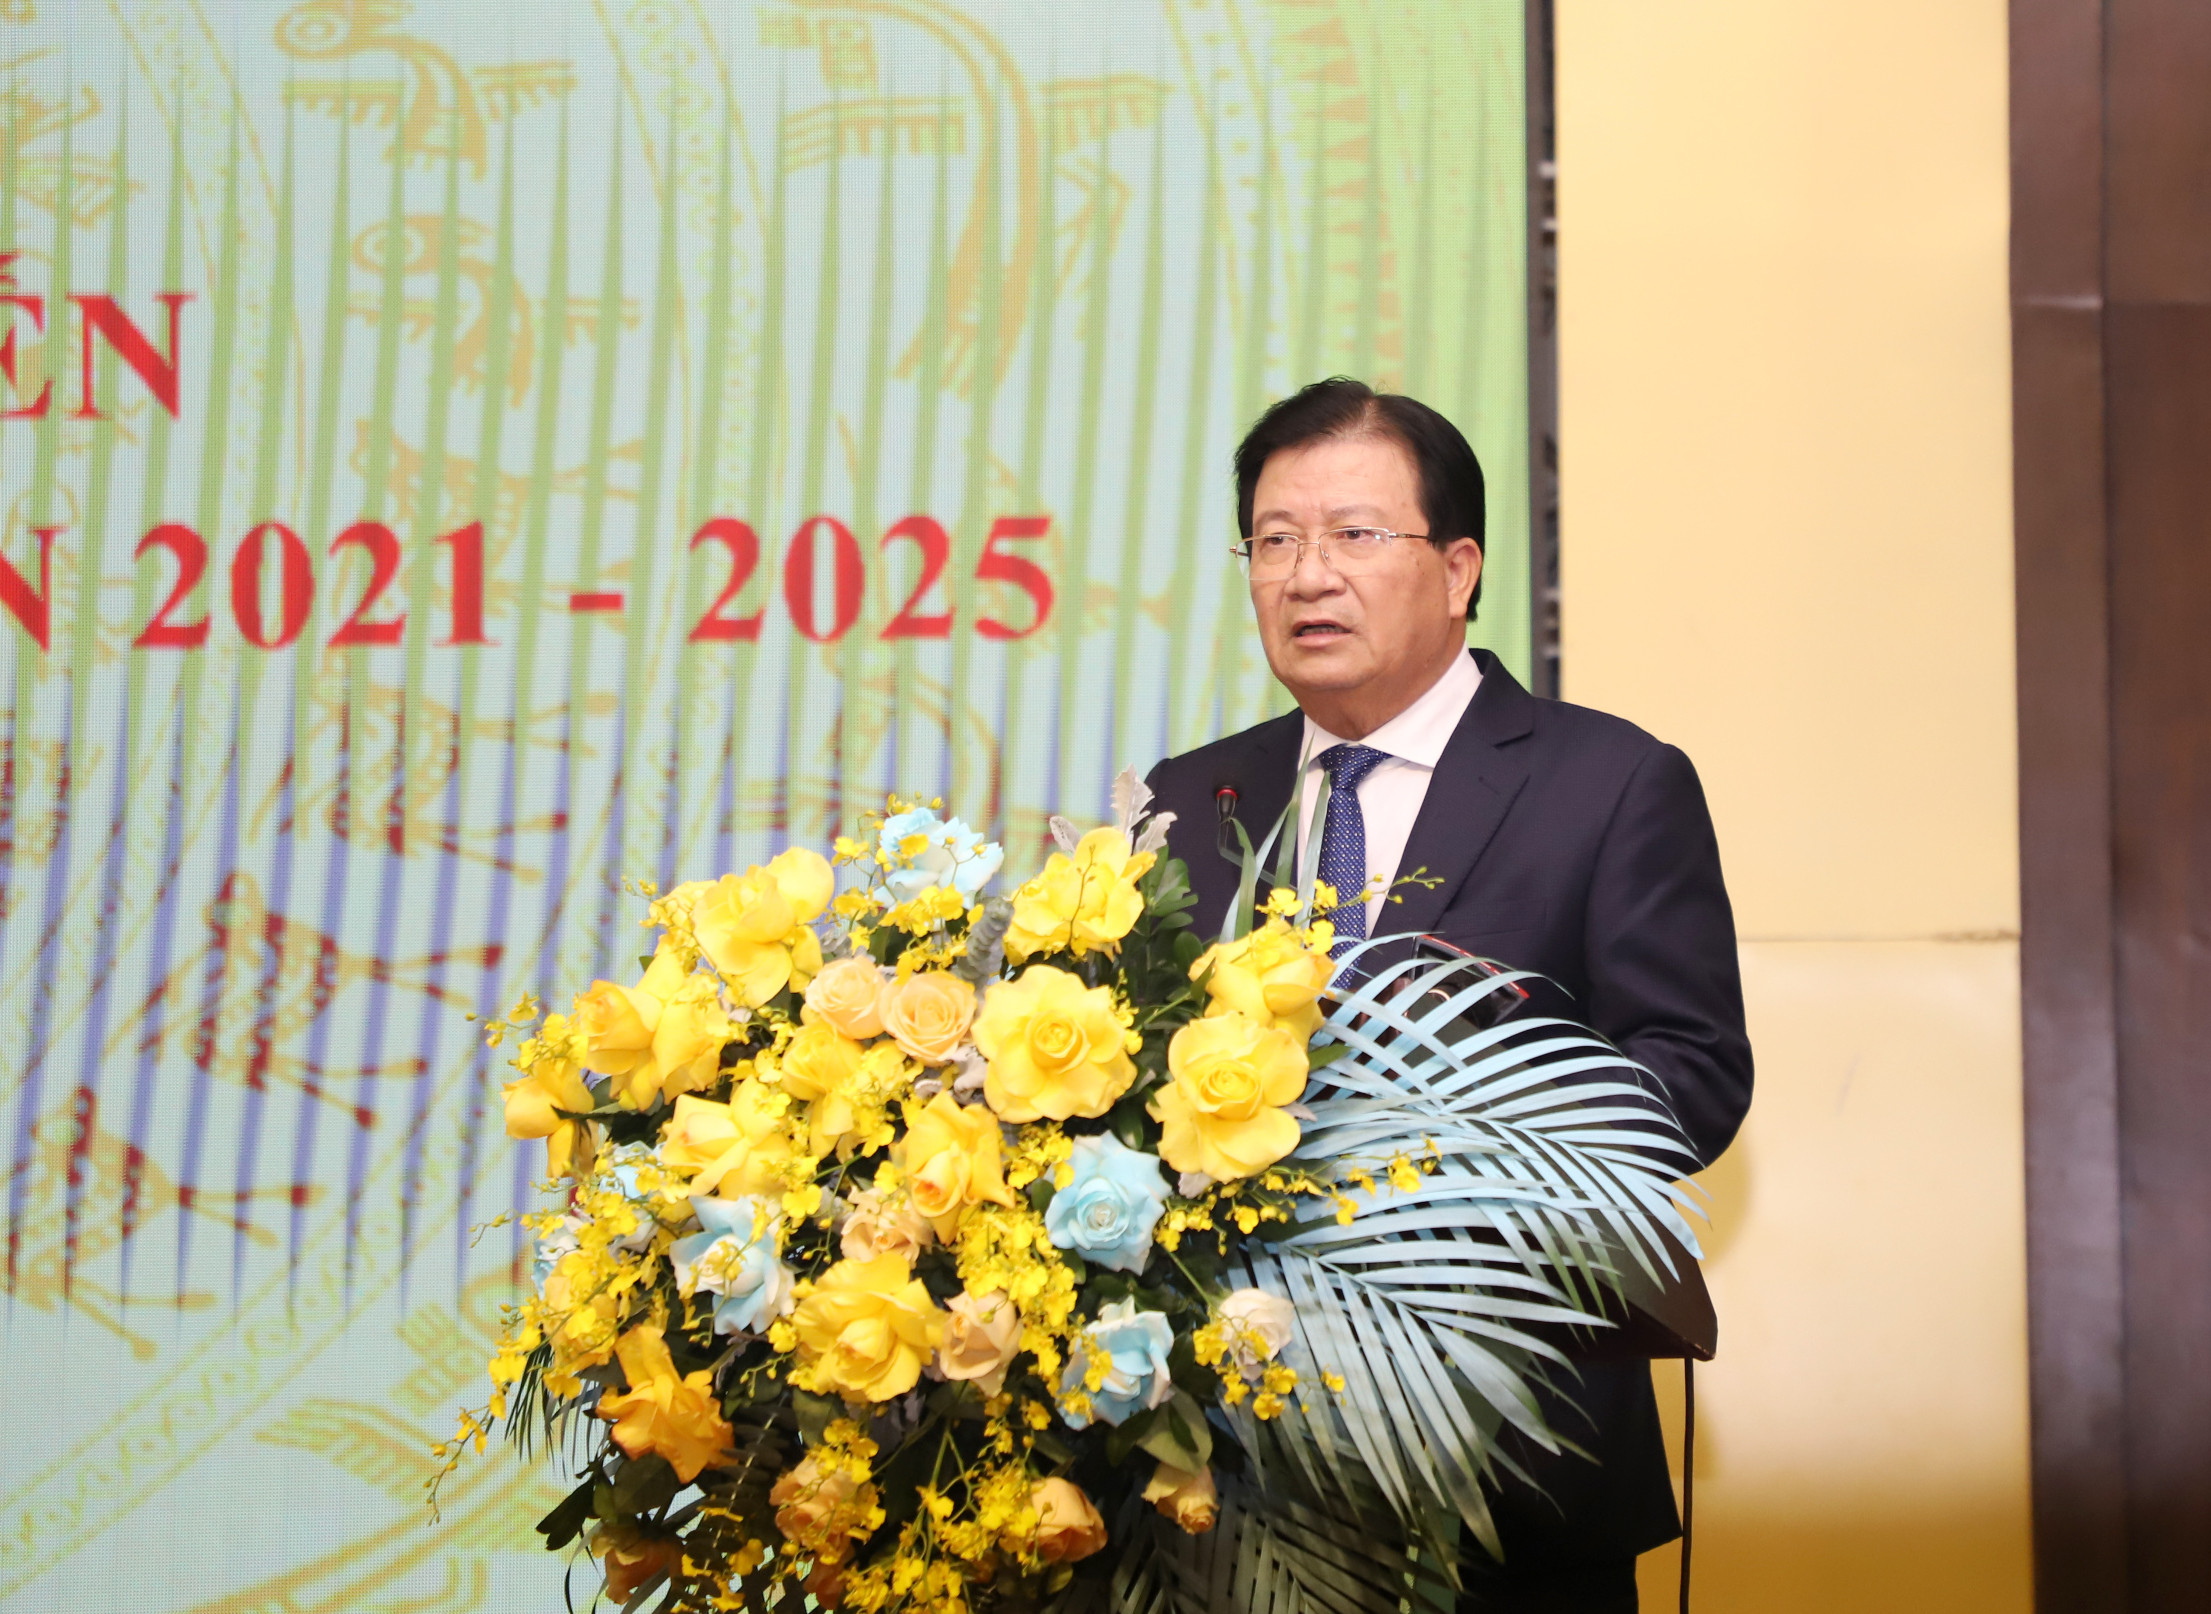 Phó Thủ tướng Chính phủ Trịnh Đình Dũng phát biểu kết luận hội nghị. Ảnh: Phạm Bằng